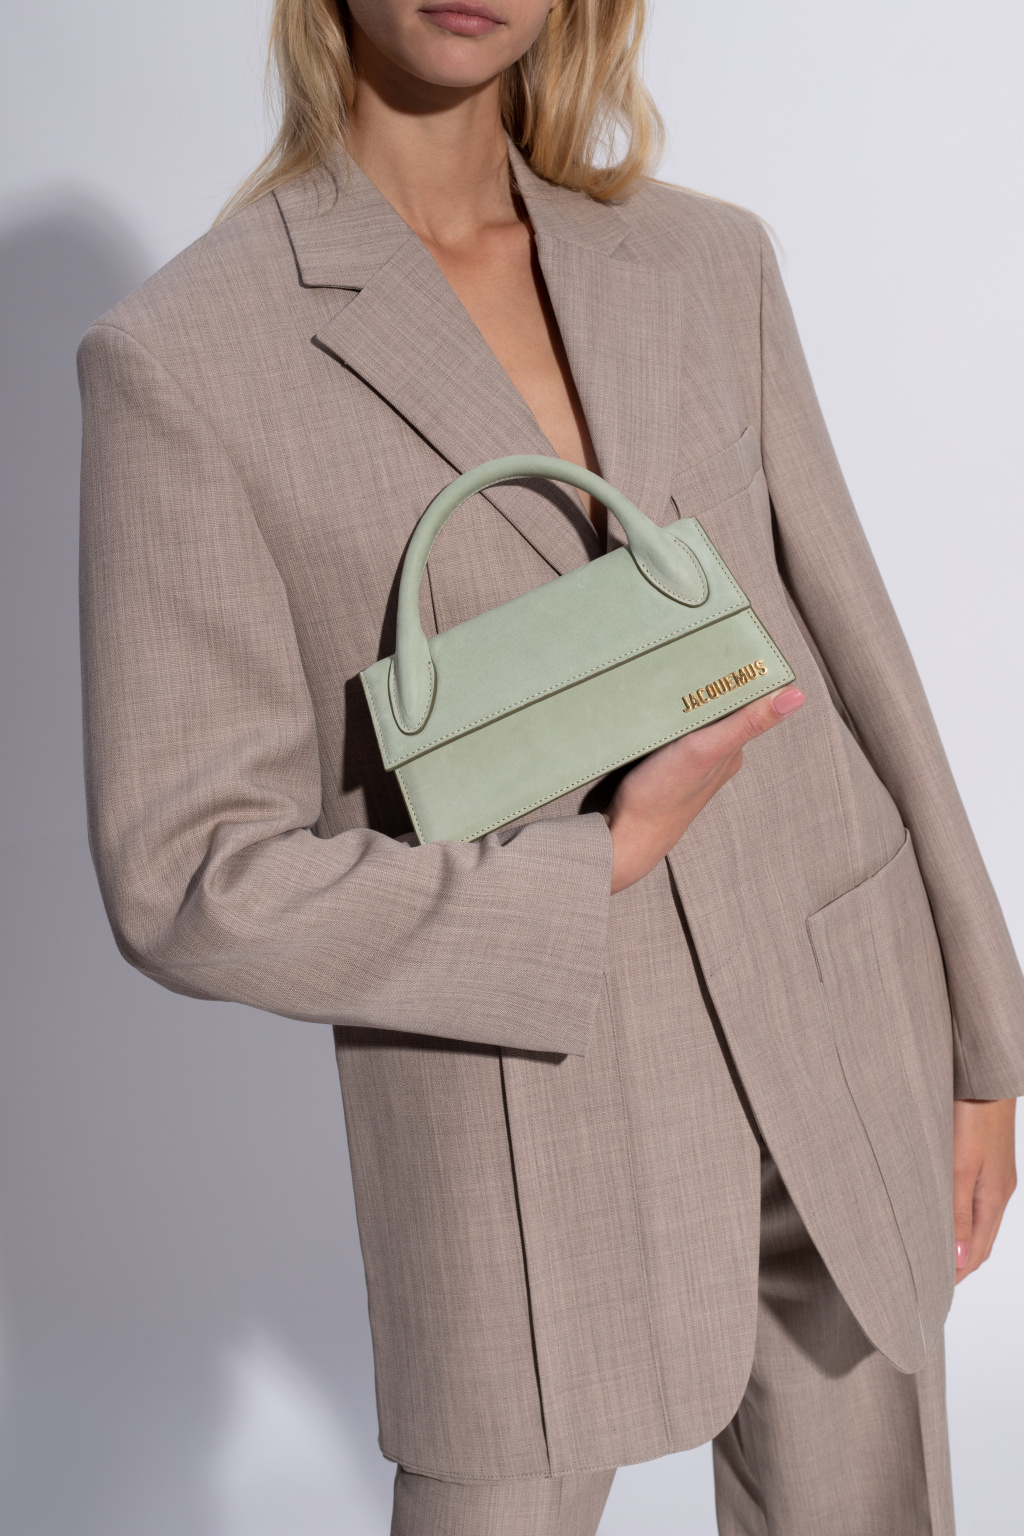 Jacquemus 'Le Chiquito Long' shoulder bag | Women's Bags | Vitkac